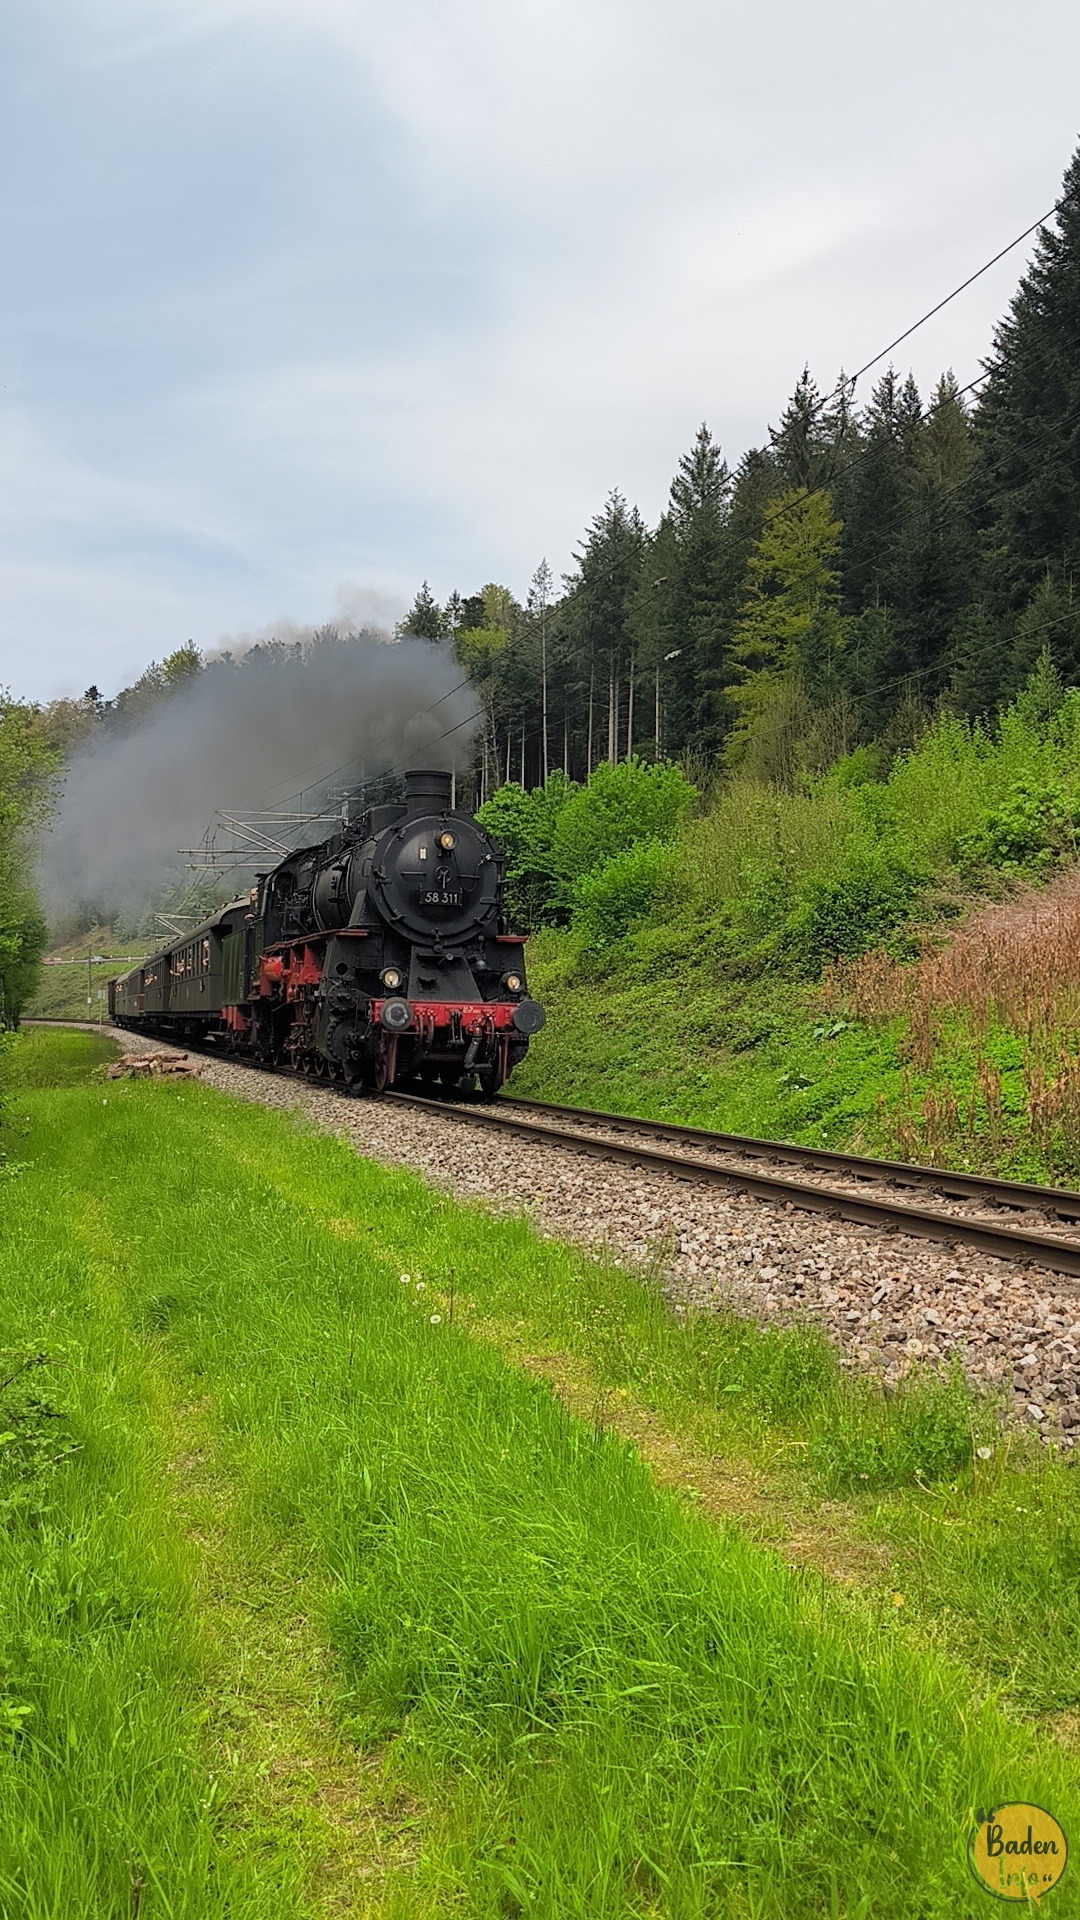 Fahrt mit dem historischen Dampfzug nach Bad Herrenalb